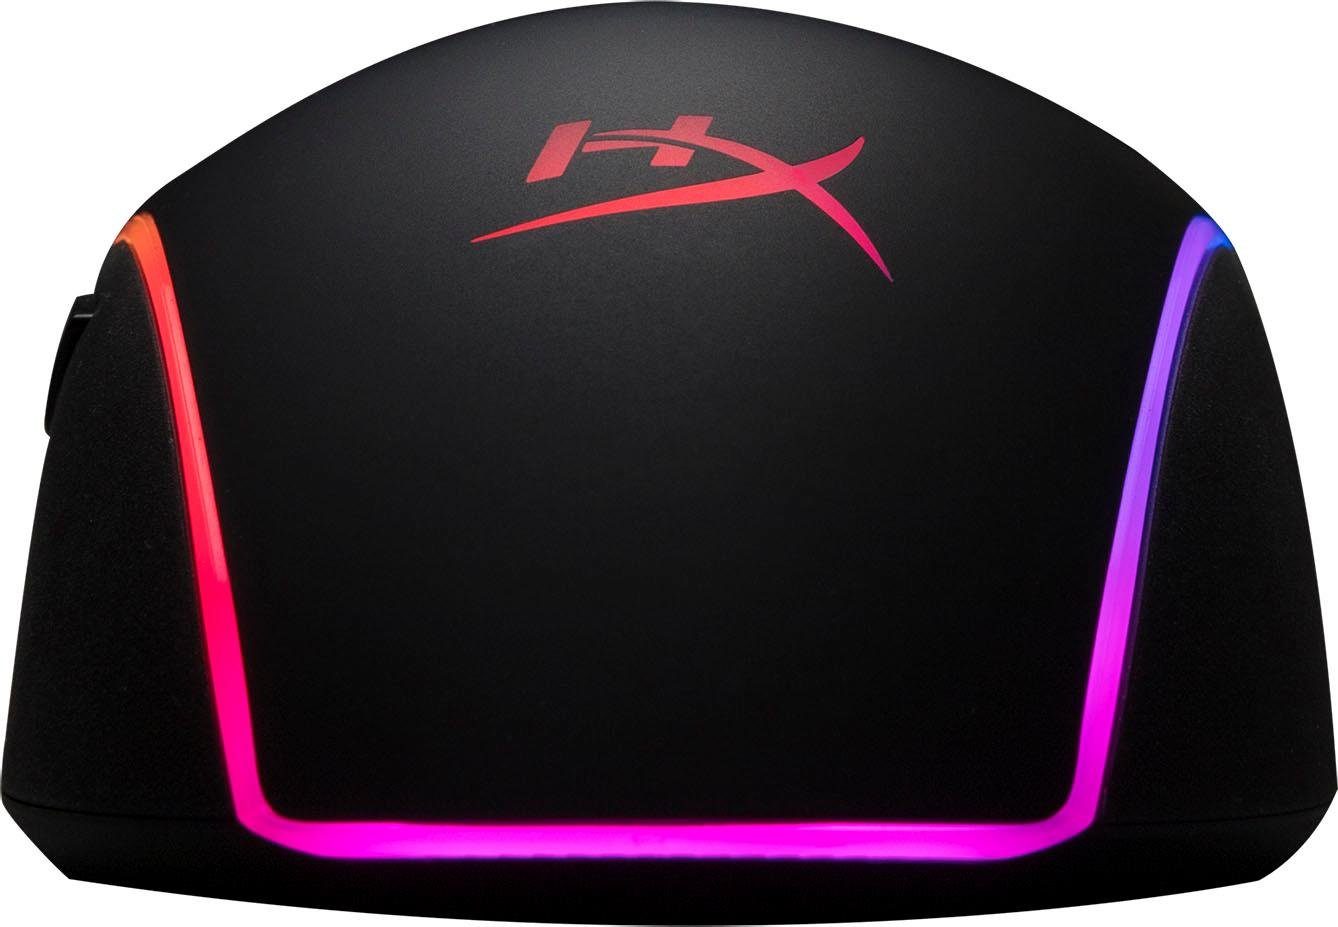 Surge HyperX HyperX Gaming-Maus Pulsefire (kabelgebunden) RGB